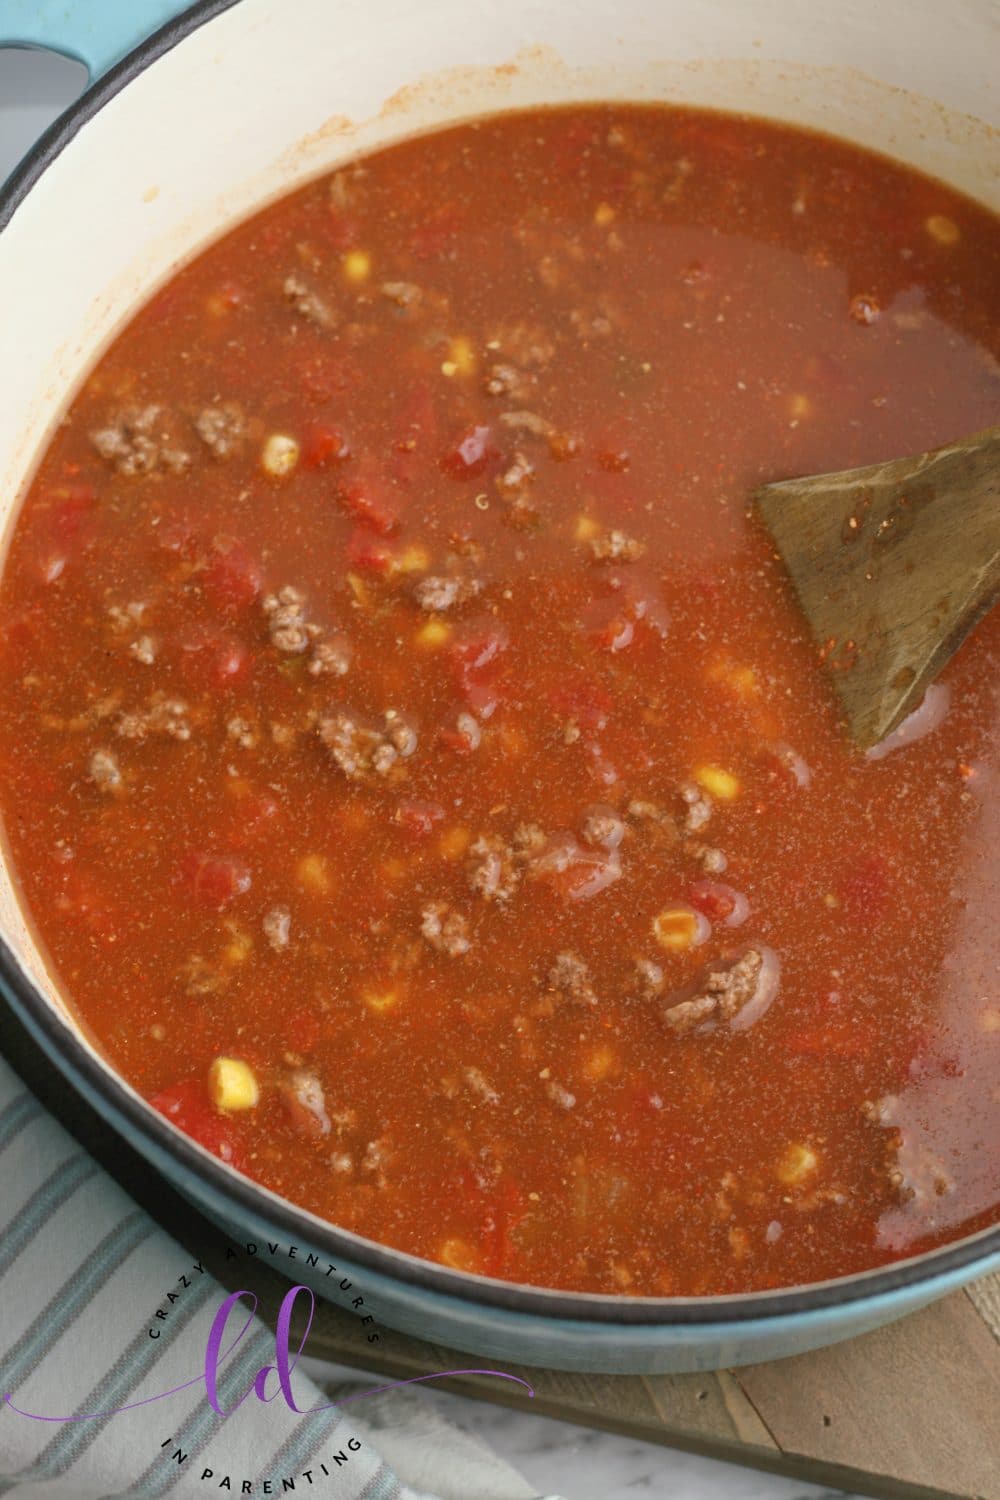 Stir the Easy Taco Soup